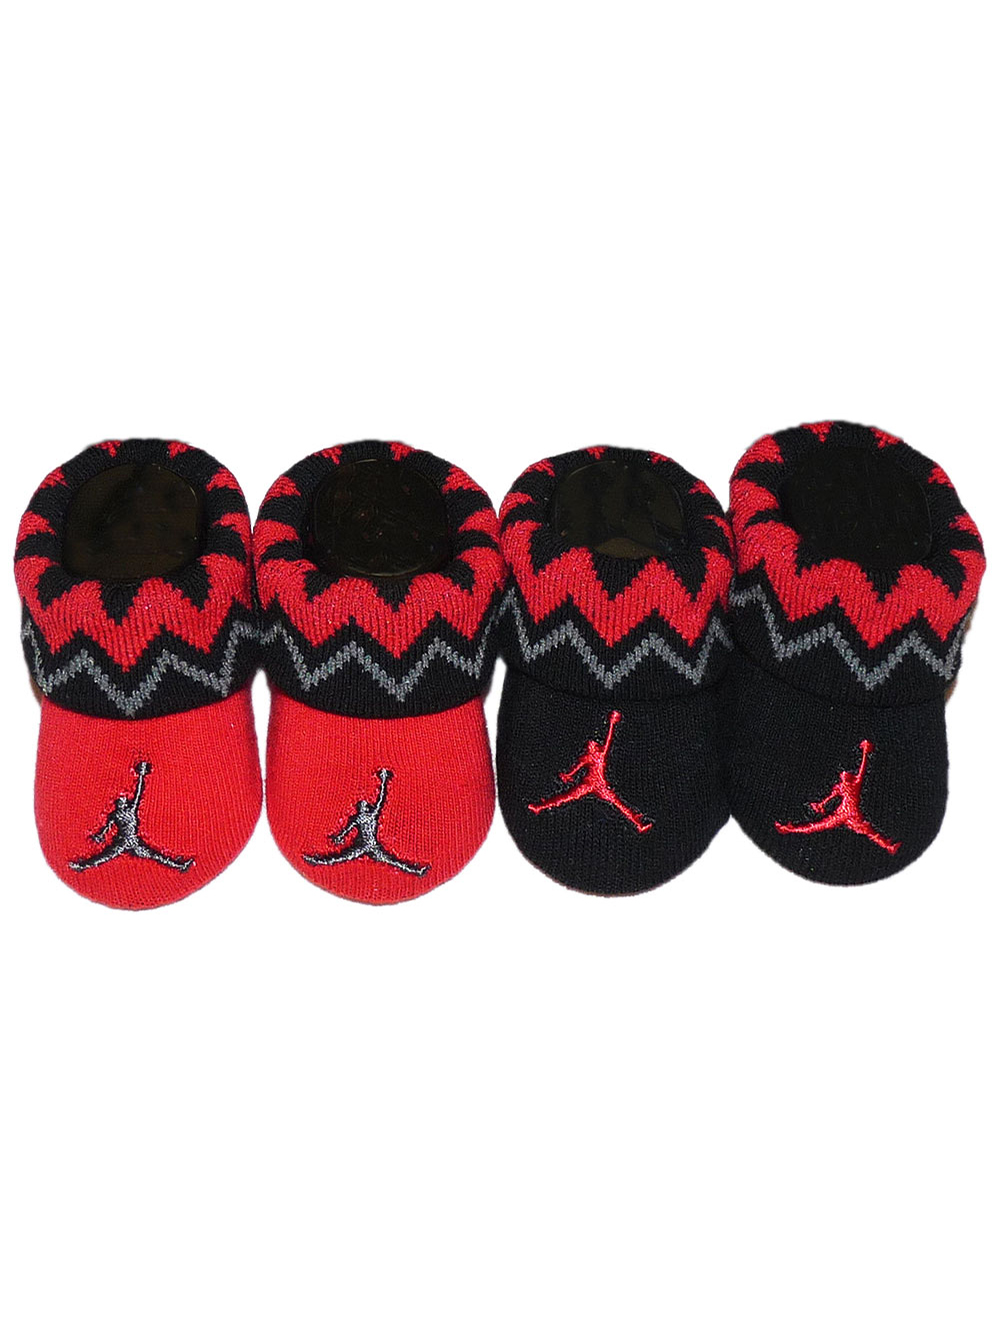 Jordan Baby Boys' 2-Pack Sock Booties